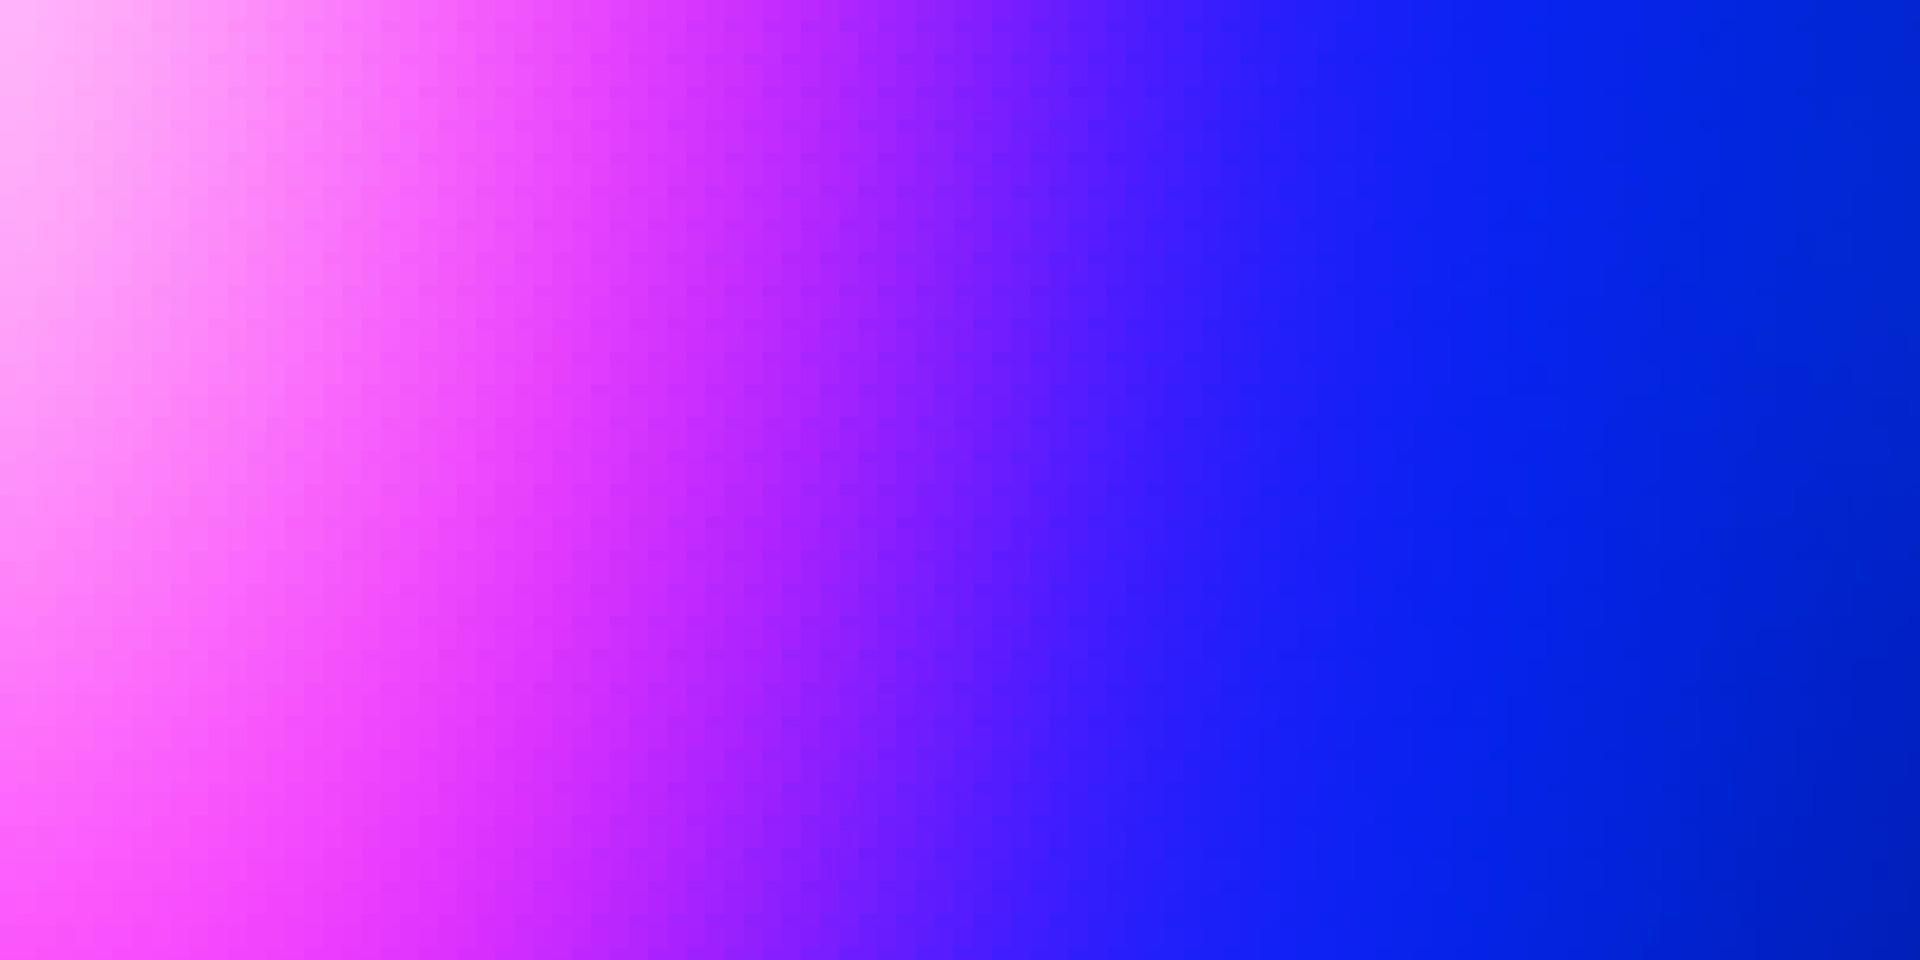 trama vettoriale rosa chiaro, blu in stile rettangolare.